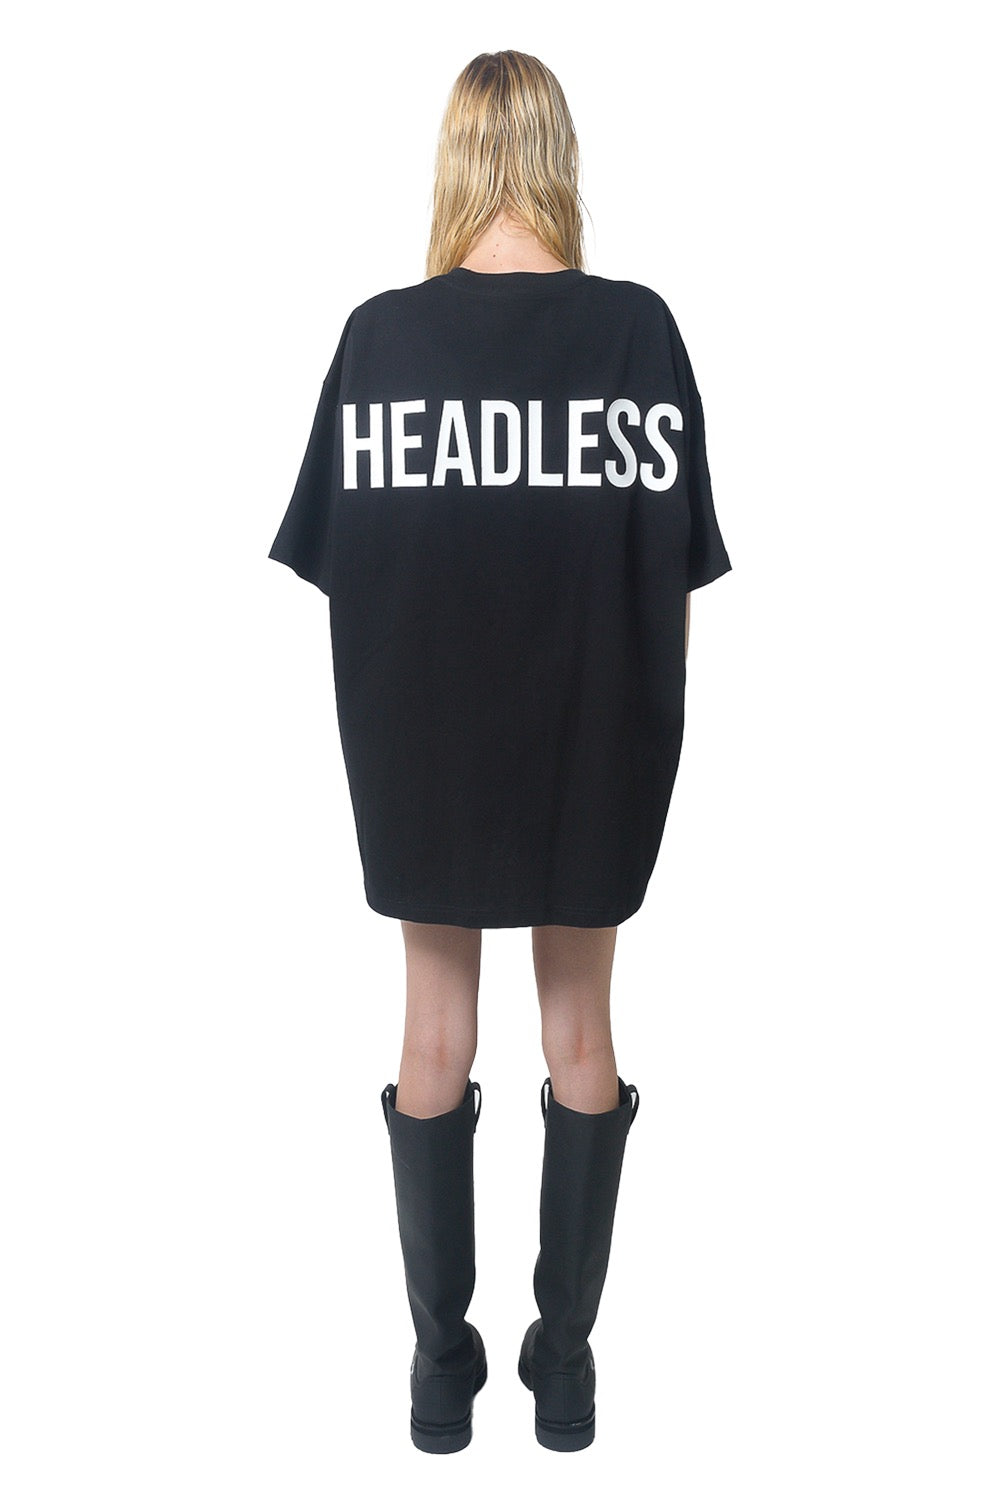 HEADLESS T-Shirt